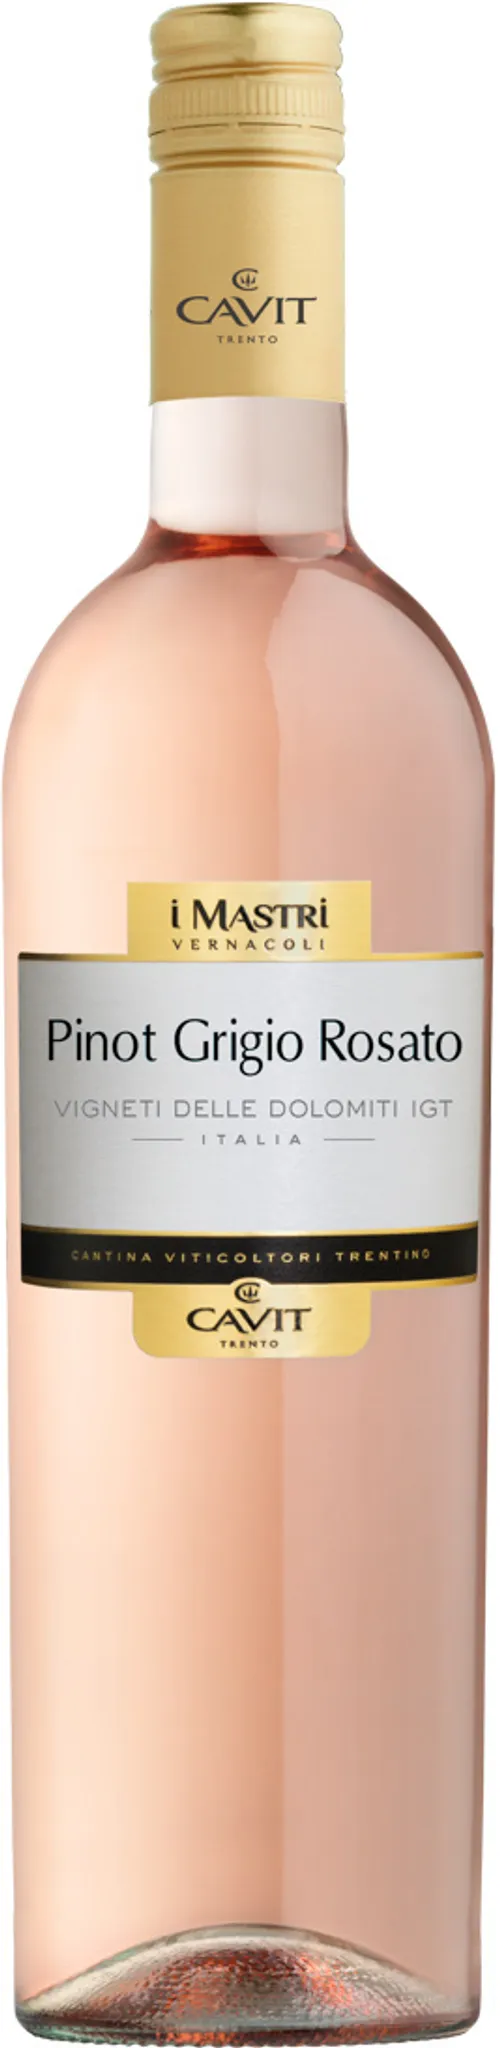 Pinot Grigio Rosato IGT delle Mastri Dolomiti